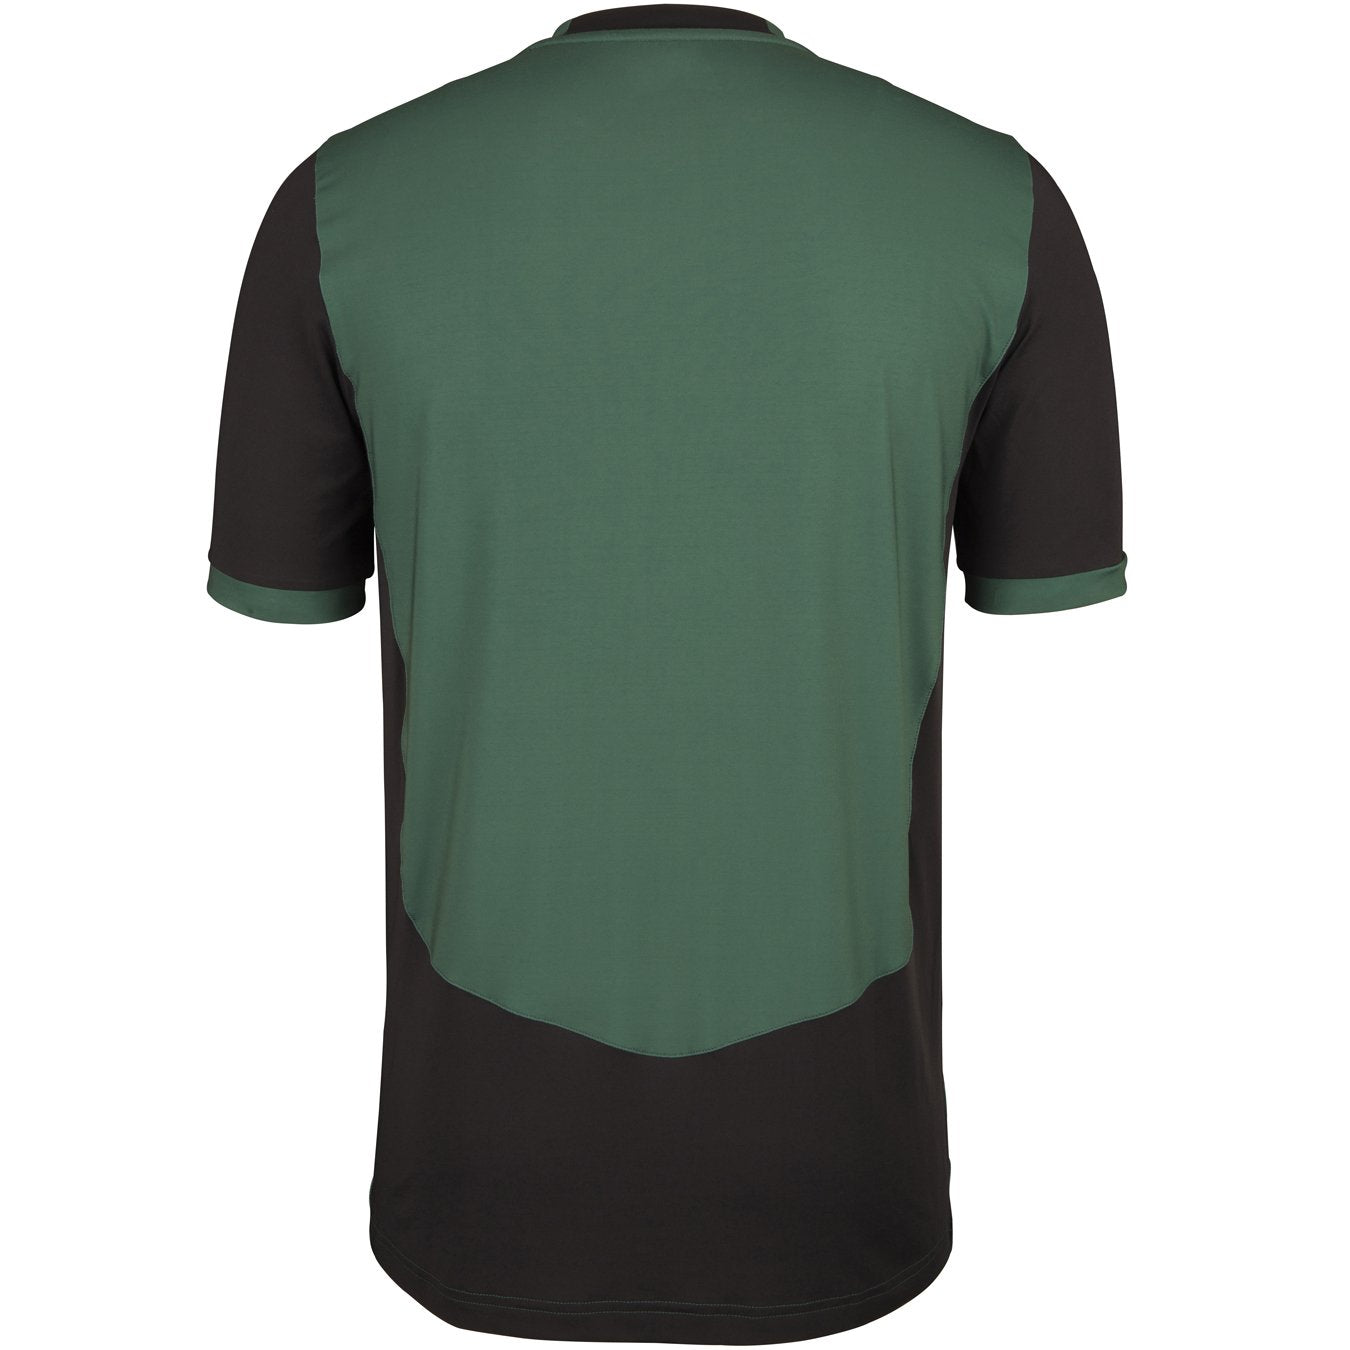 CCFB18Shirt T20 Green_black, Back